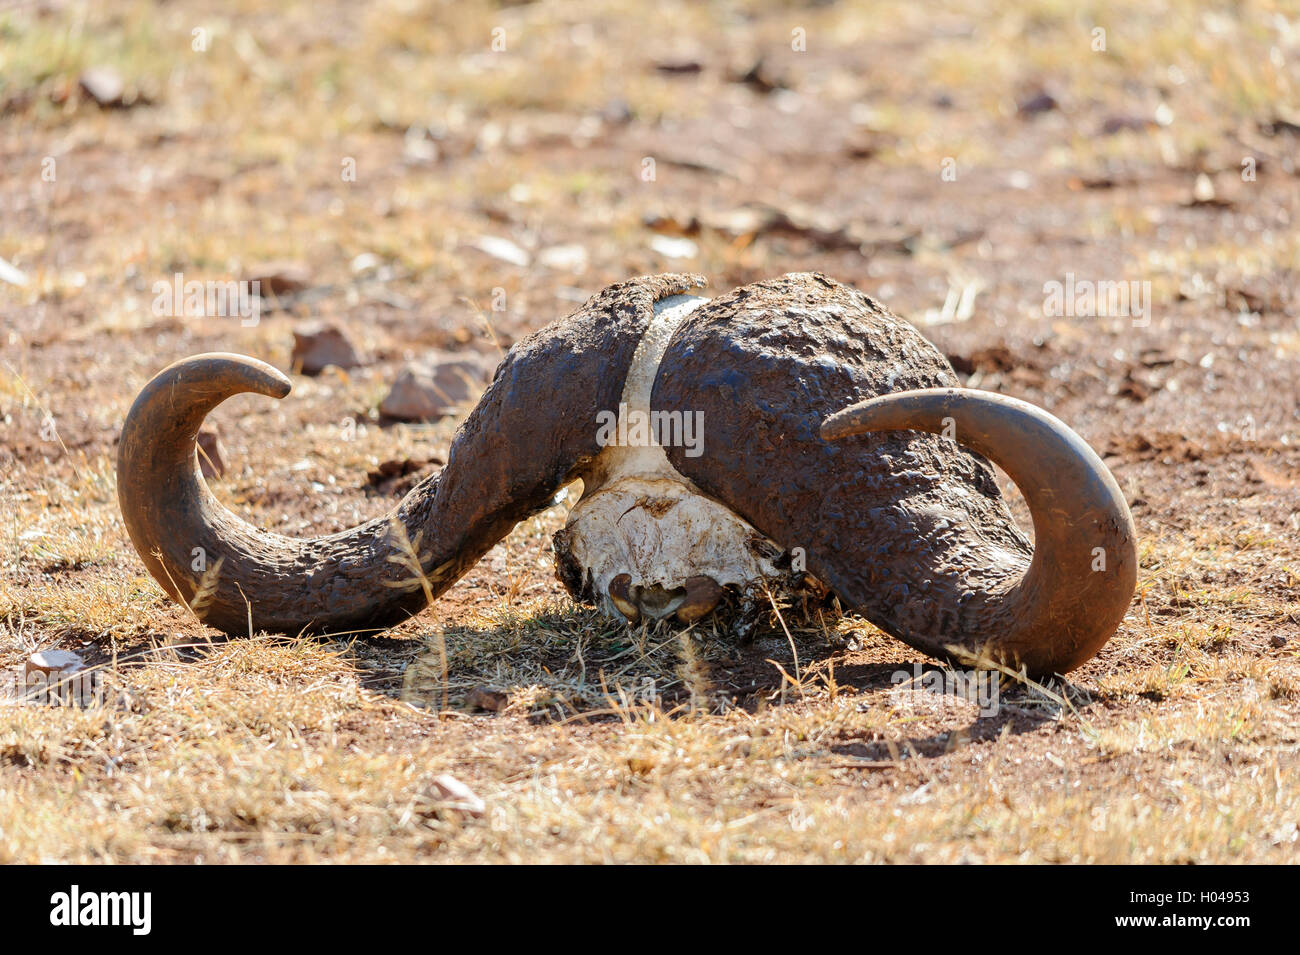 Mitad de búfalo cráneo (búfalos africanos o Cape buffalo) en el suelo de la sabana africana. Sudáfrica Foto de stock